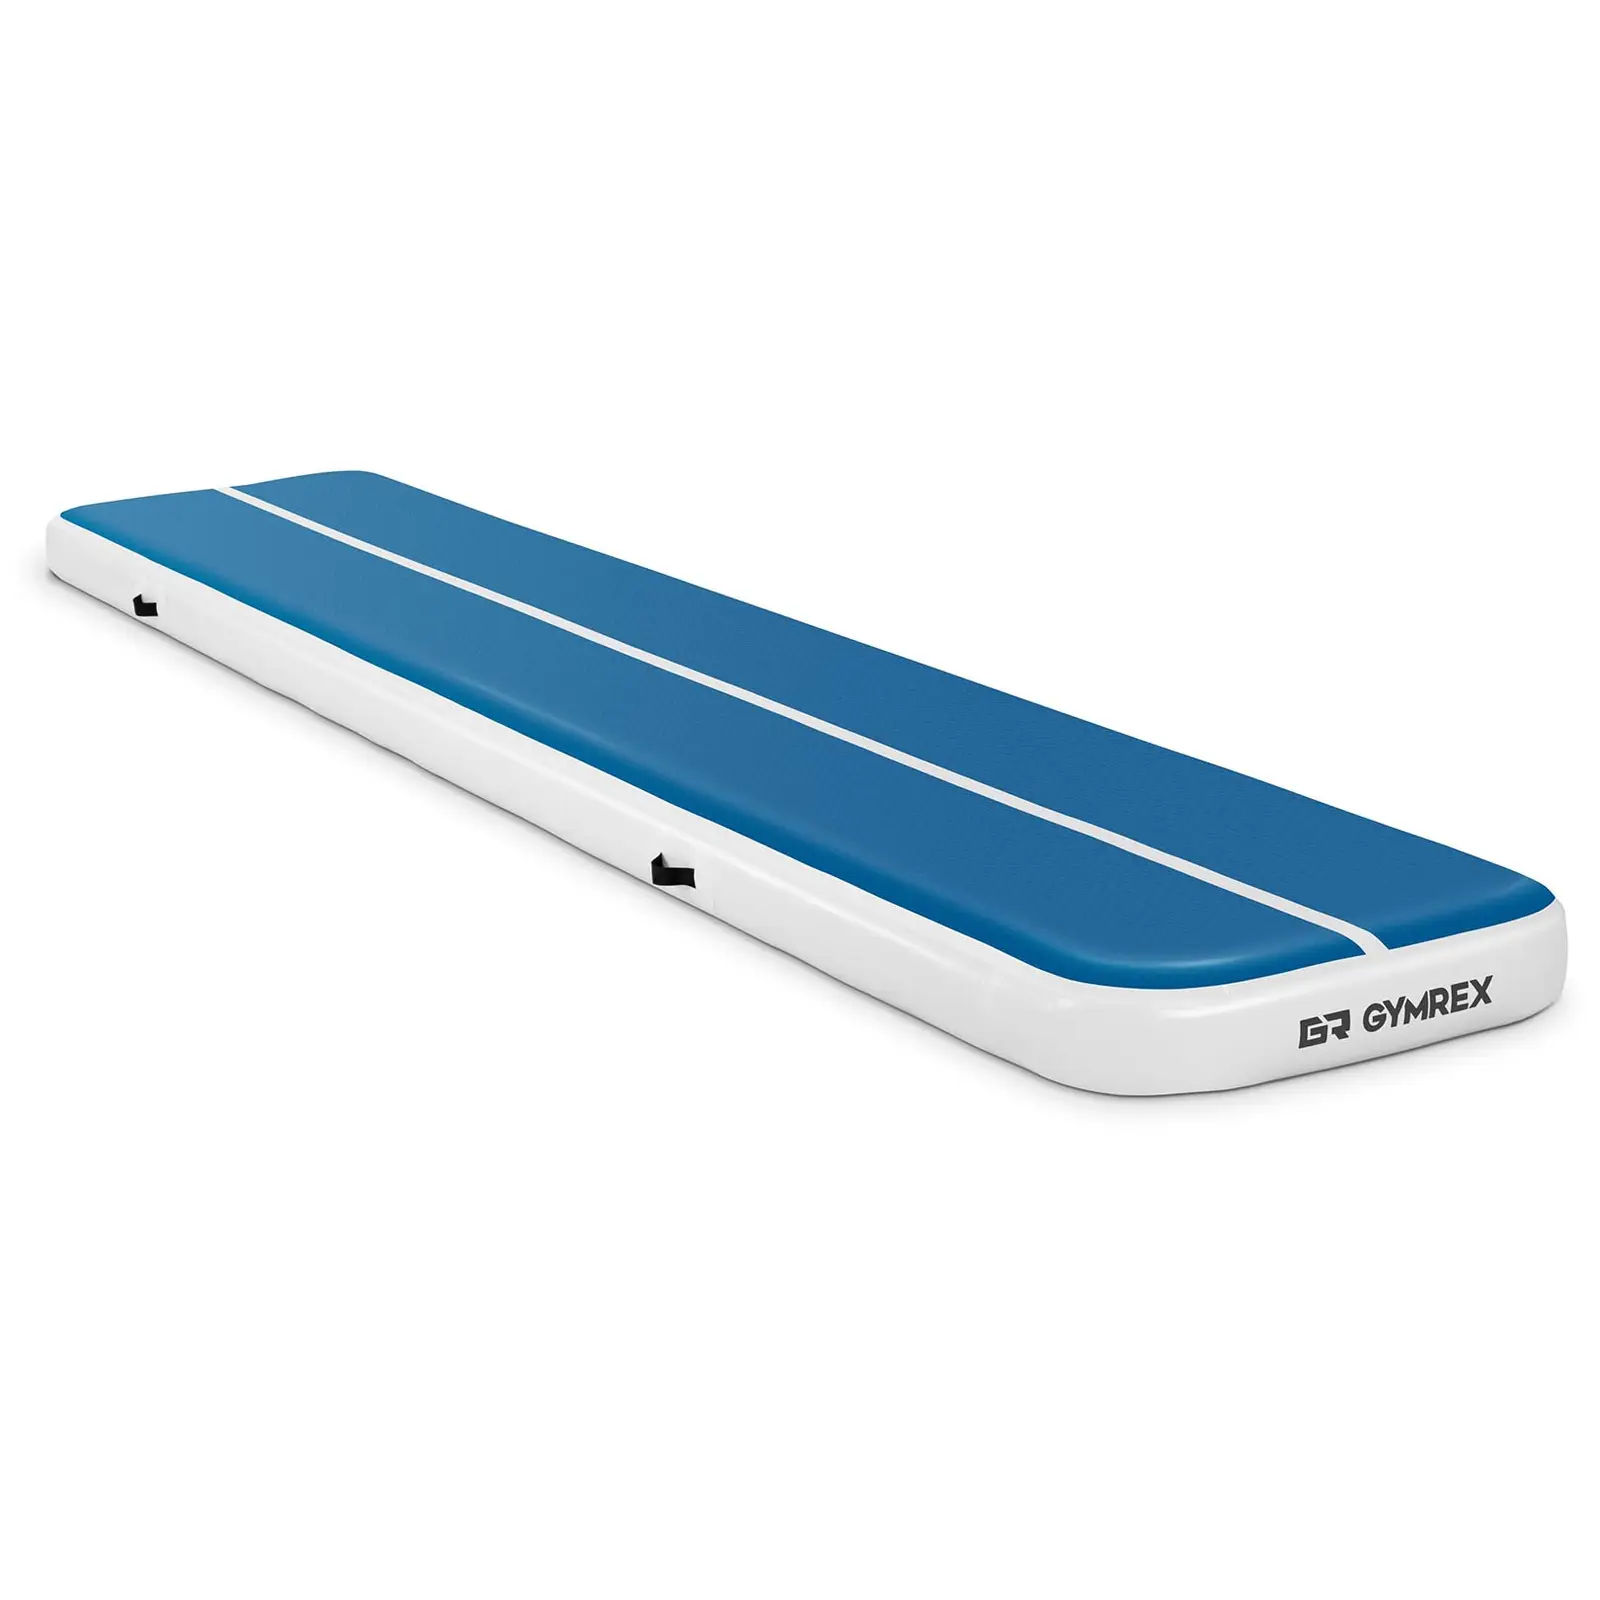 Tappeto da ginnastica gonfiabile - 500 x 100 x 20 cm - 250 kg - blu/bianco